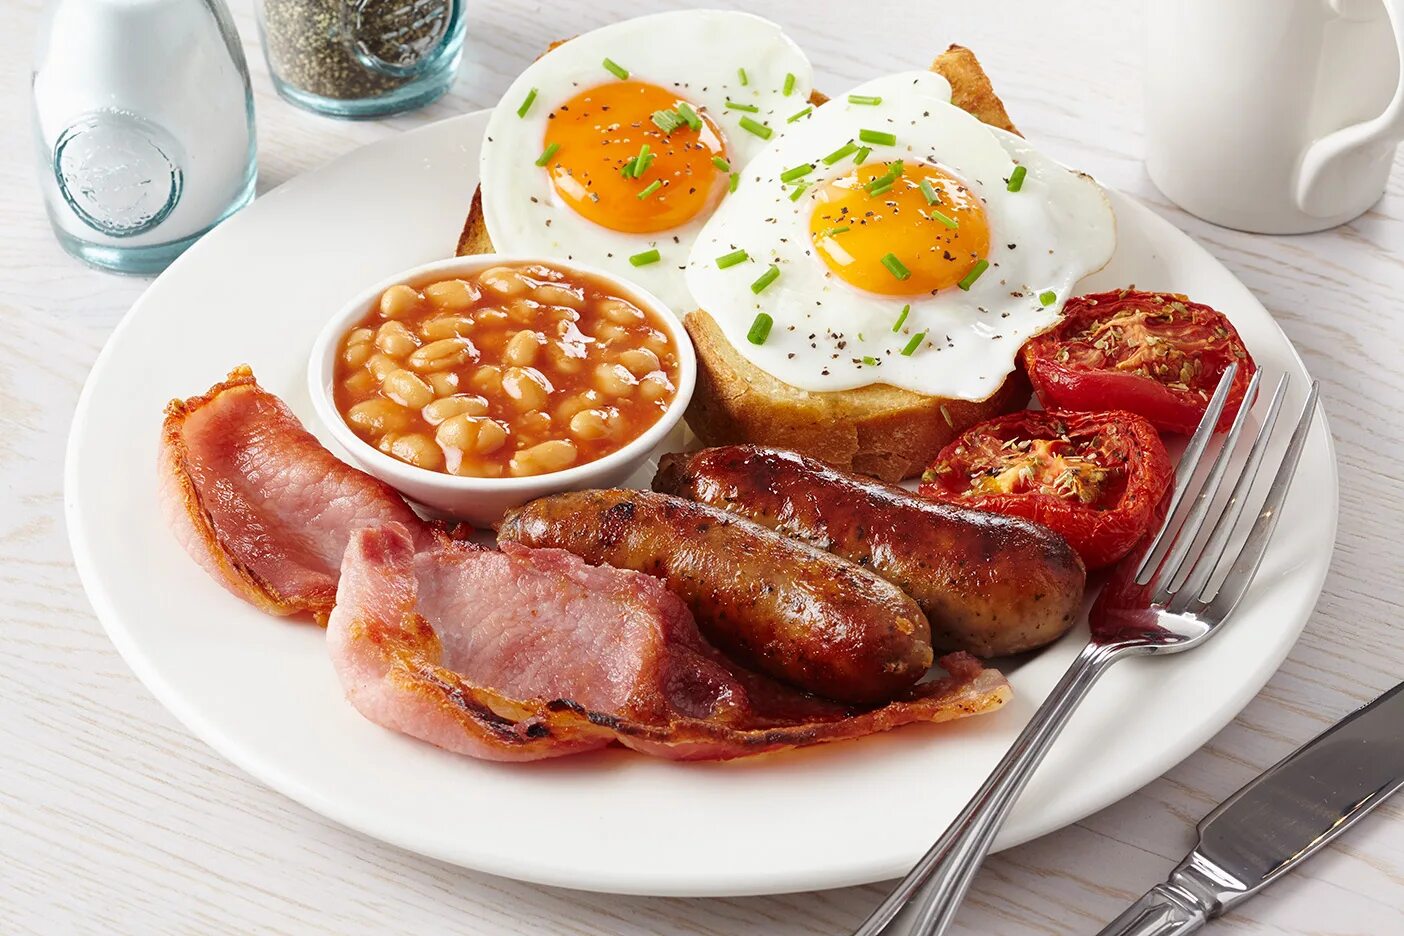 Инглиш брекфаст. Бритиш Брекфаст. Английский завтрак Британия. Завтрак великобританцев. Традиционный завтрак англичан.